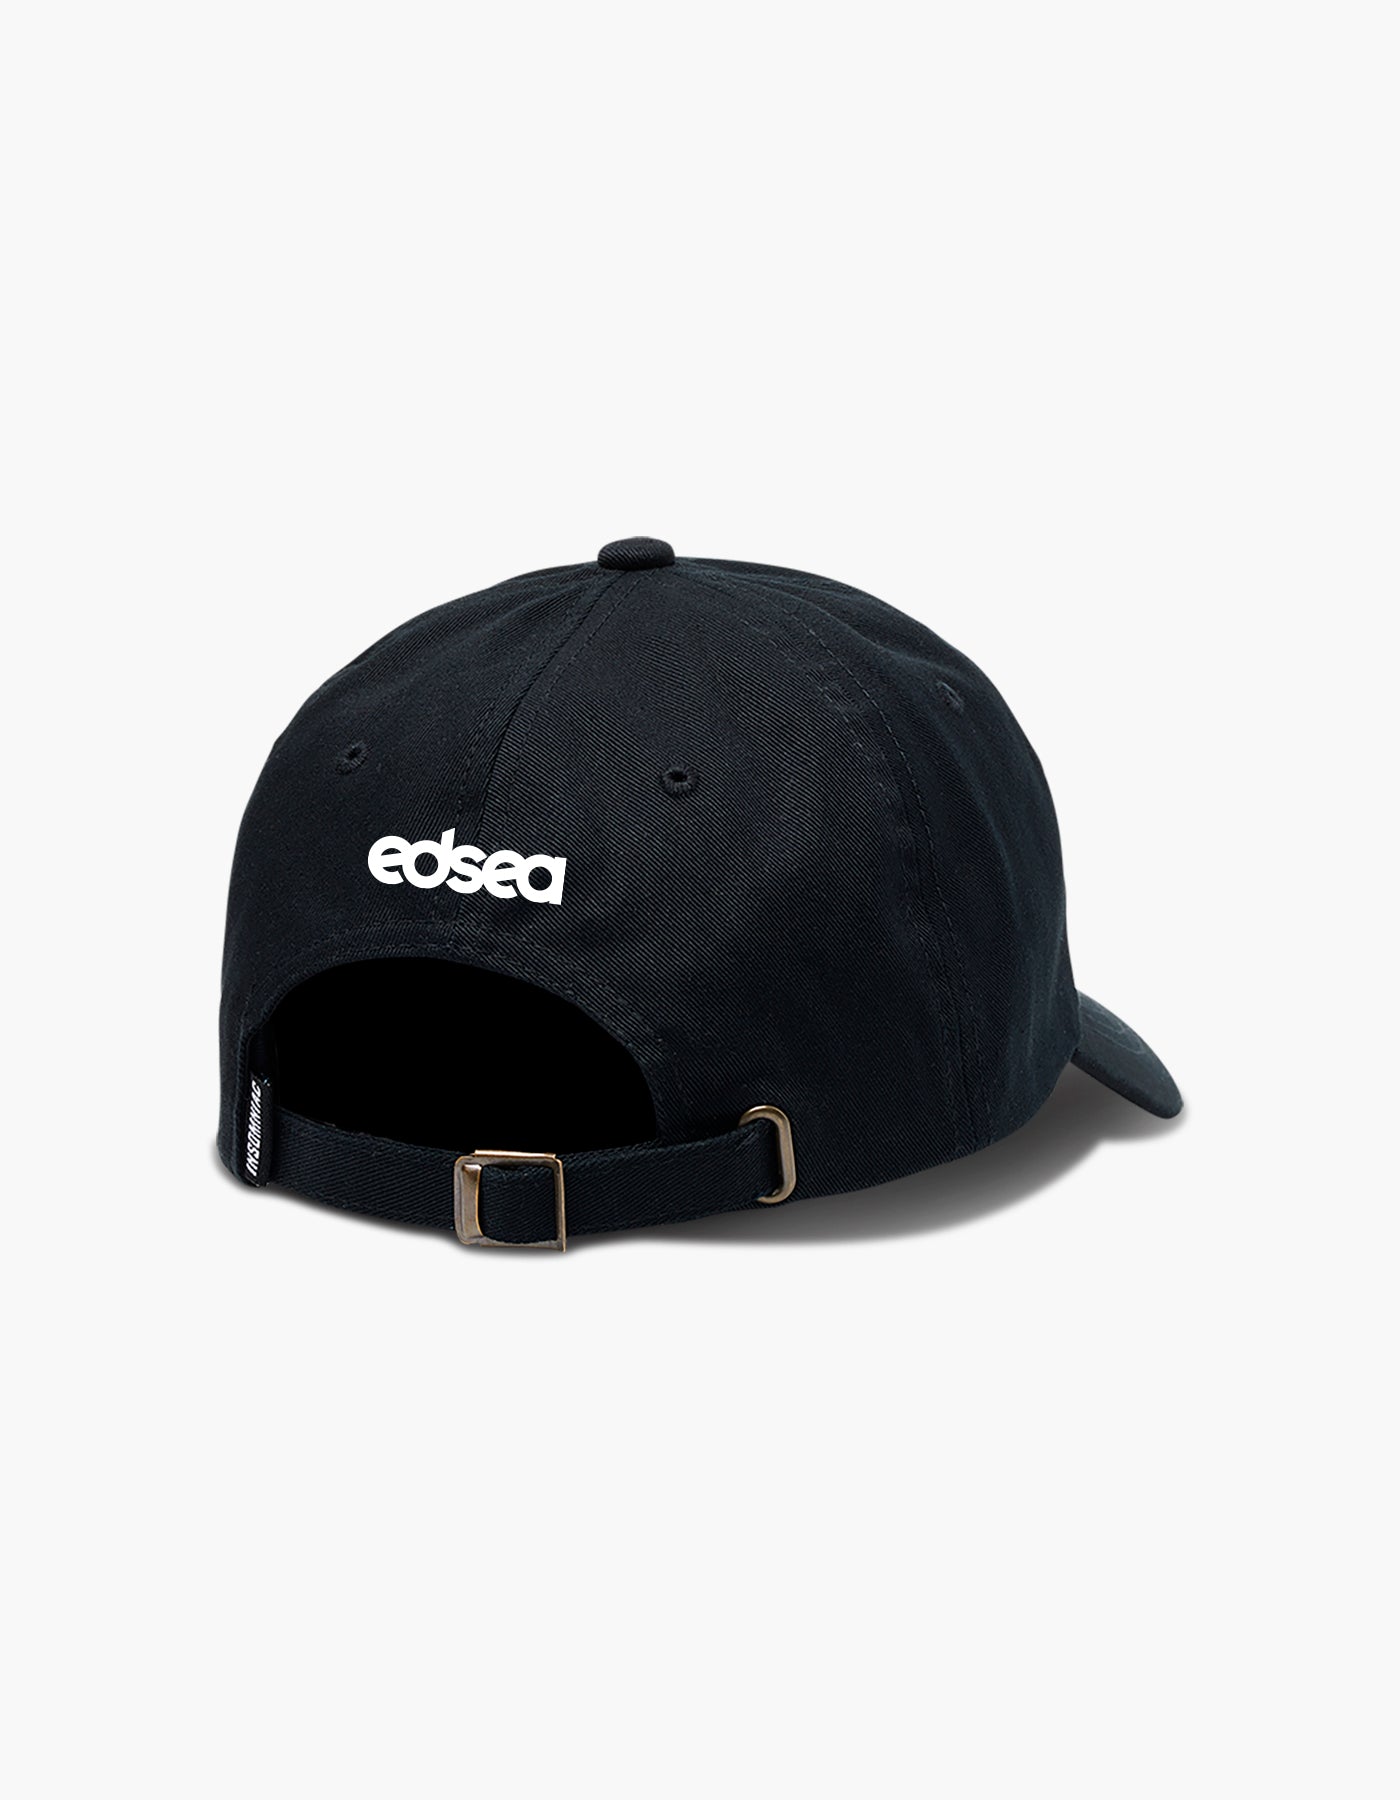 EDSea  TM Dad Hat